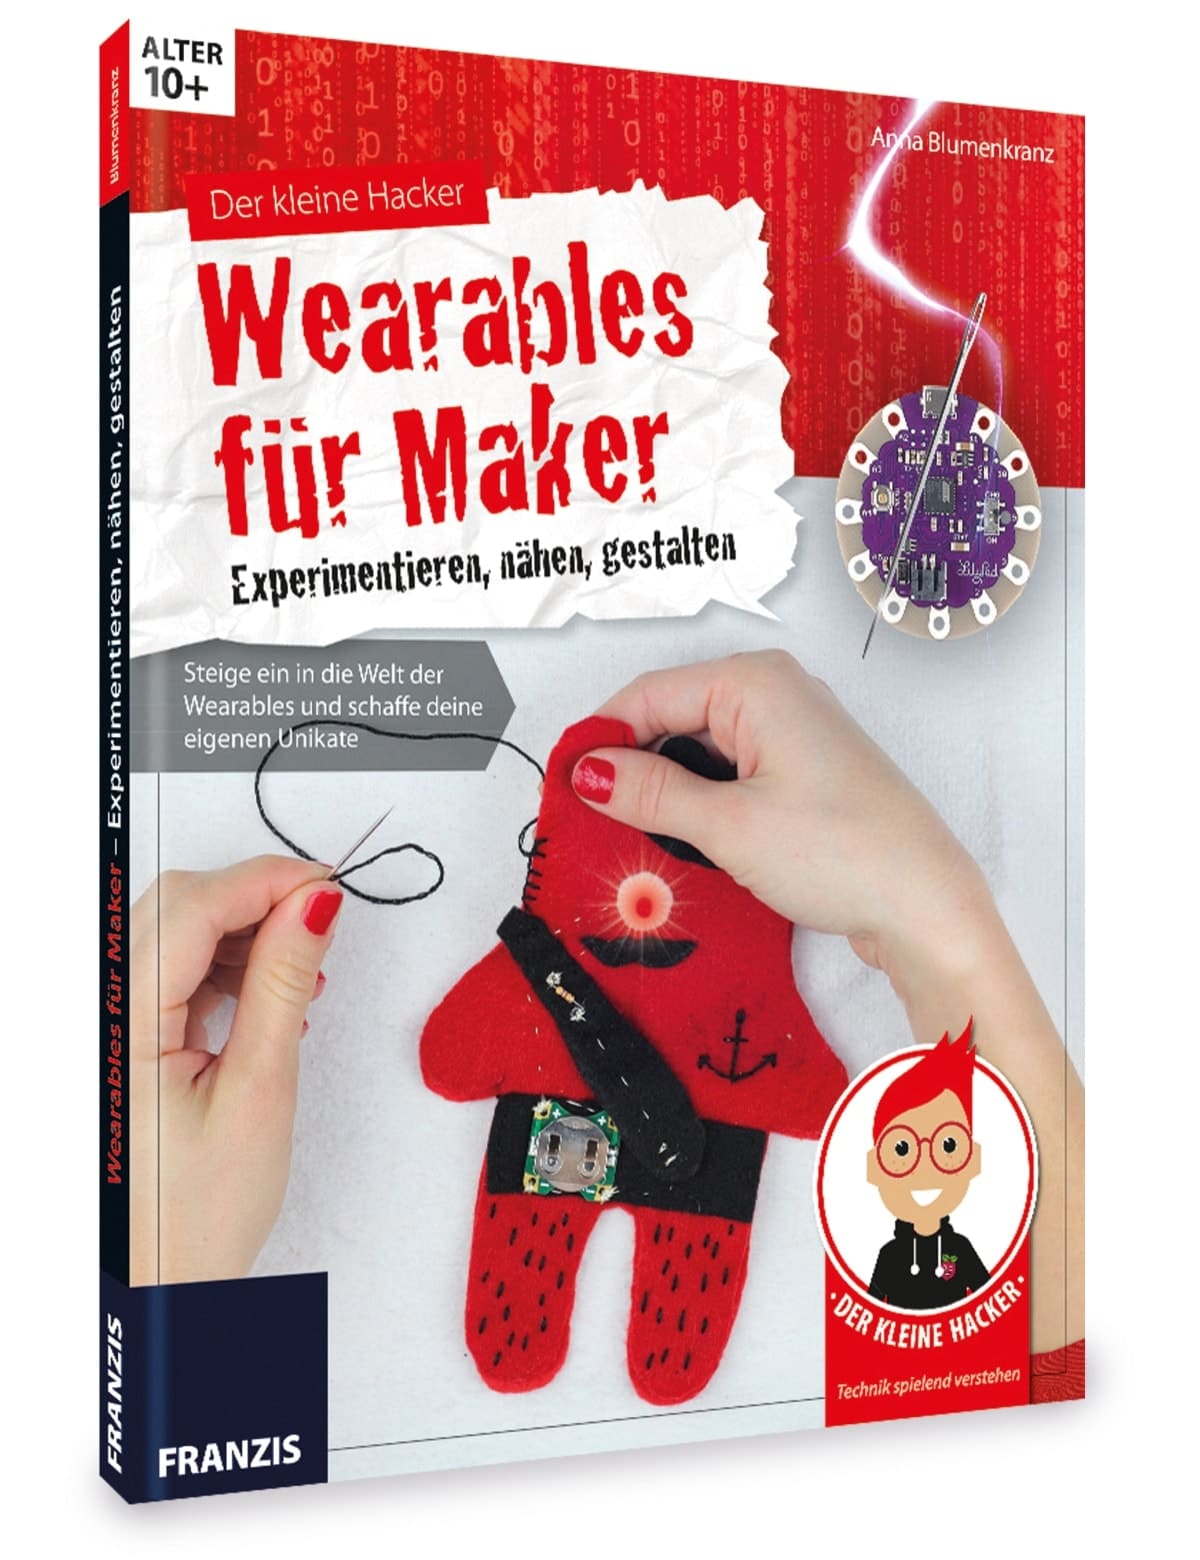 Franzis Buch Der kleine Hacker "Wearables für Maker"